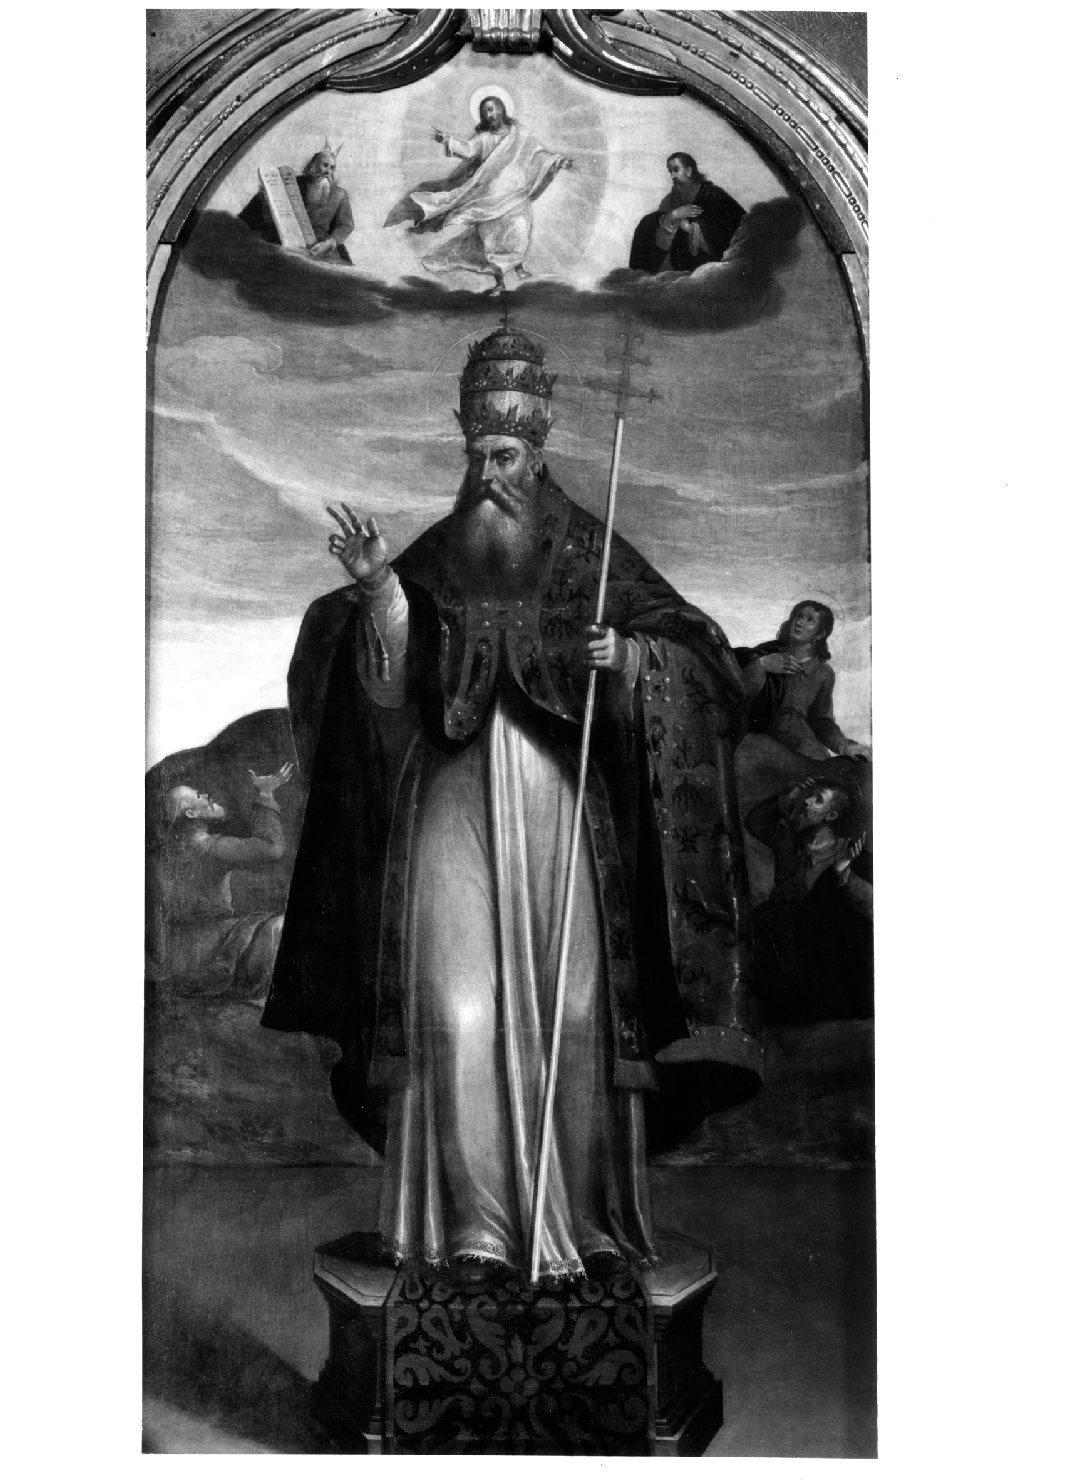 San Sisto papa benedicente e la trasfigurazione di Cristo con gli Ap ostoli (pala d'altare) di Frigimelica Francesco (attribuito) (inizio sec. XVII)